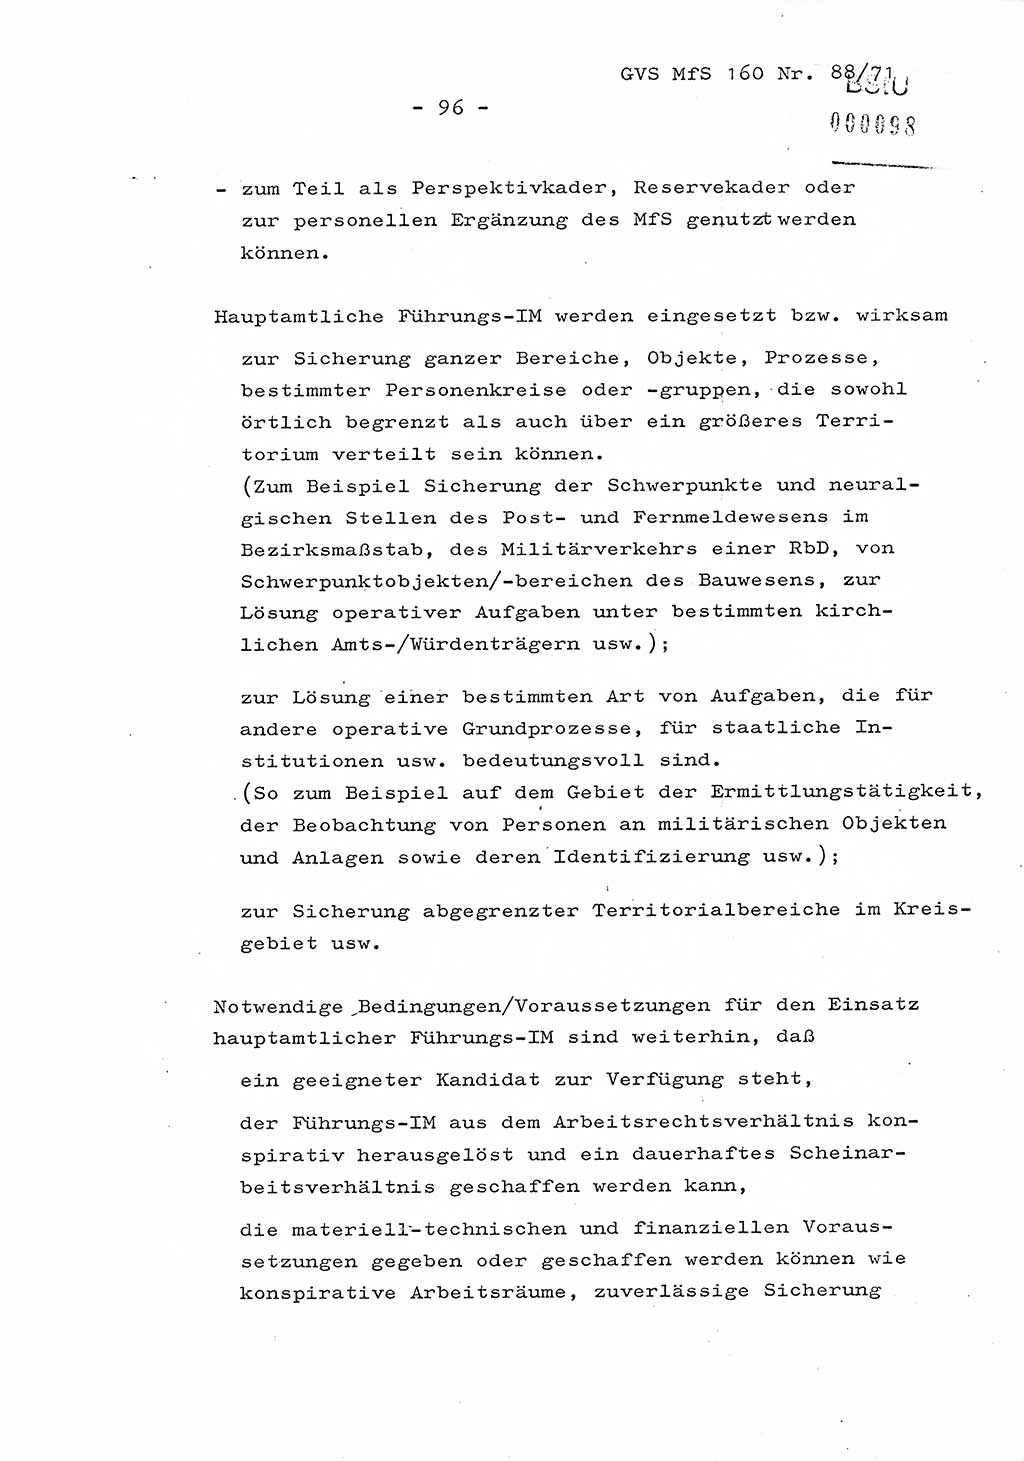 Dissertation Oberstleutnant Josef Schwarz (BV Schwerin), Major Fritz Amm (JHS), Hauptmann Peter Gräßler (JHS), Ministerium für Staatssicherheit (MfS) [Deutsche Demokratische Republik (DDR)], Juristische Hochschule (JHS), Geheime Verschlußsache (GVS) 160-88/71, Potsdam 1972, Seite 96 (Diss. MfS DDR JHS GVS 160-88/71 1972, S. 96)